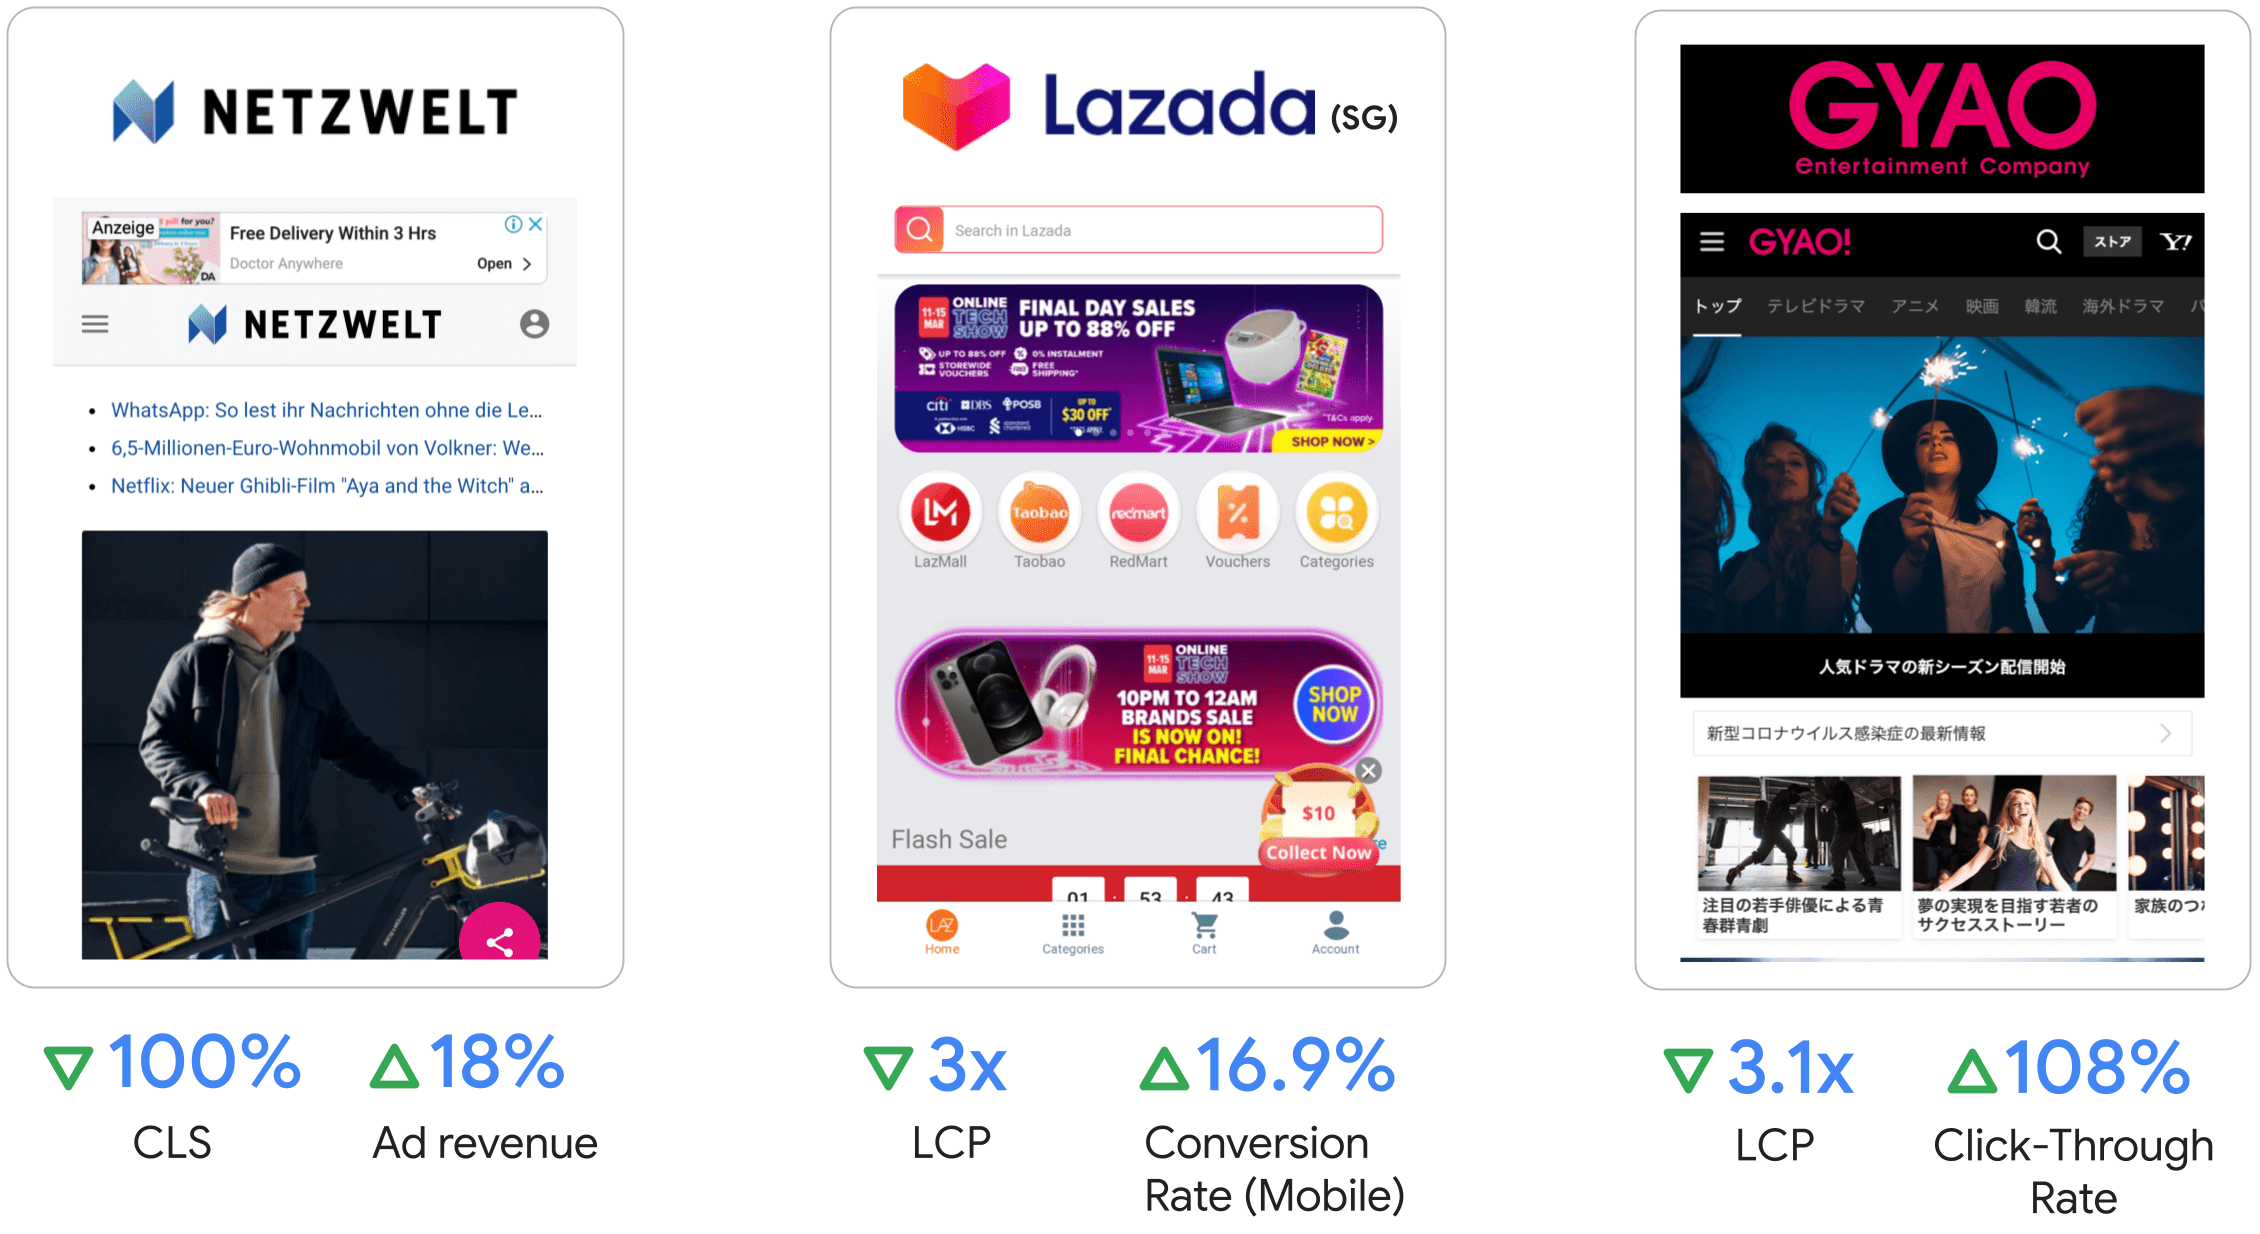 Netzwelt a vu ses revenus publicitaires augmenter de 18 %,
Le LCP de Lazada a triplé et son taux de conversion sur mobile de 16,9 %.
GYAO a multiplié son LCP par 3,1 et son taux de clics de 108 %.